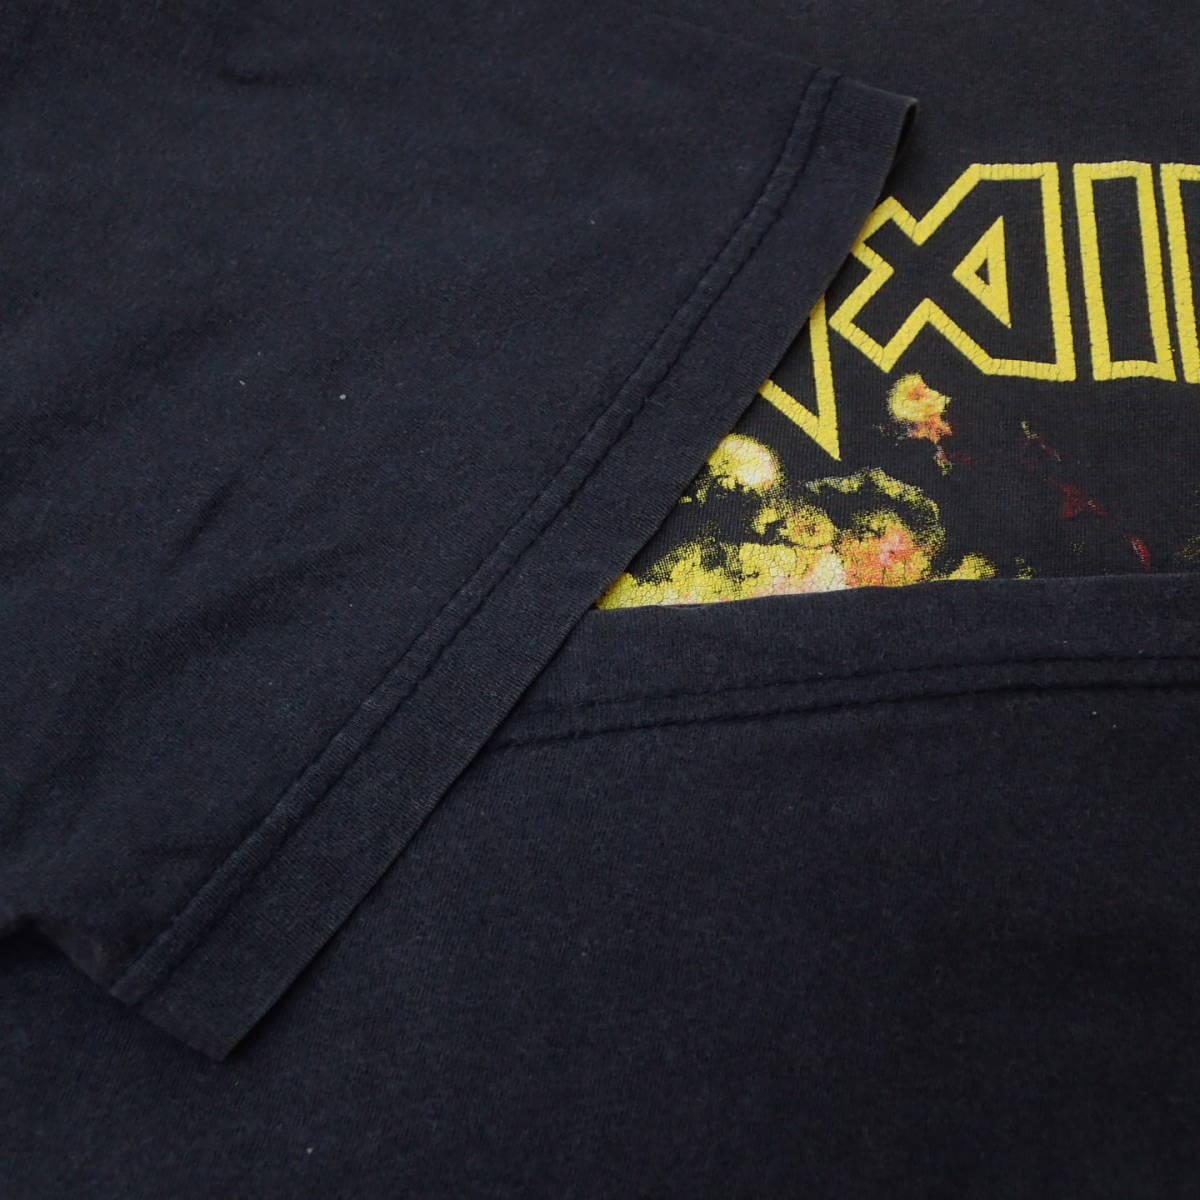 ■ 90s IRON MAIDEN Vintage T-shirt ■ アイアンメイデン ヴィンテージ Tシャツ 当時物 本物 バンドT ロックT heavymetal hardrock